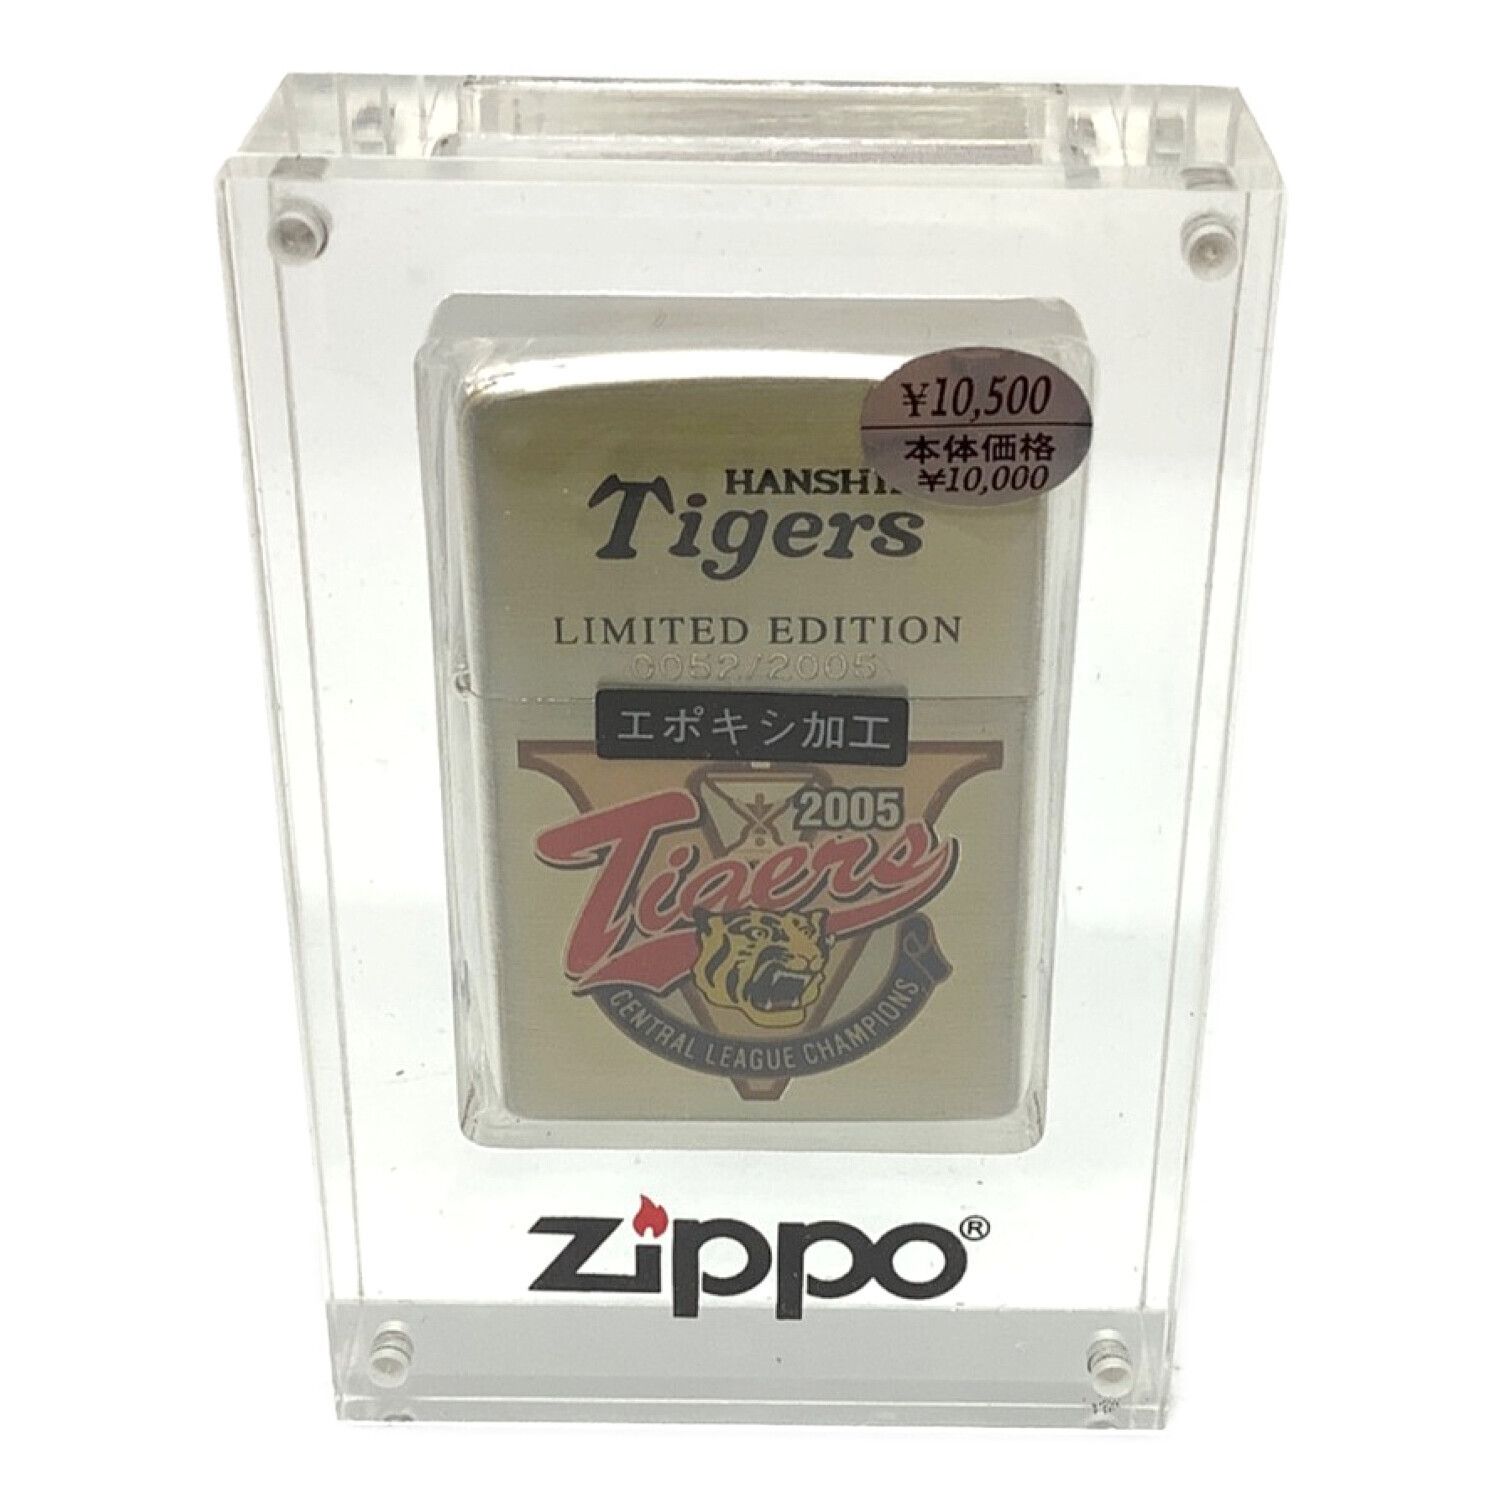 ZIPPO (ジッポ) ZIPPO 阪神タイガース2005年優勝 リミテッド